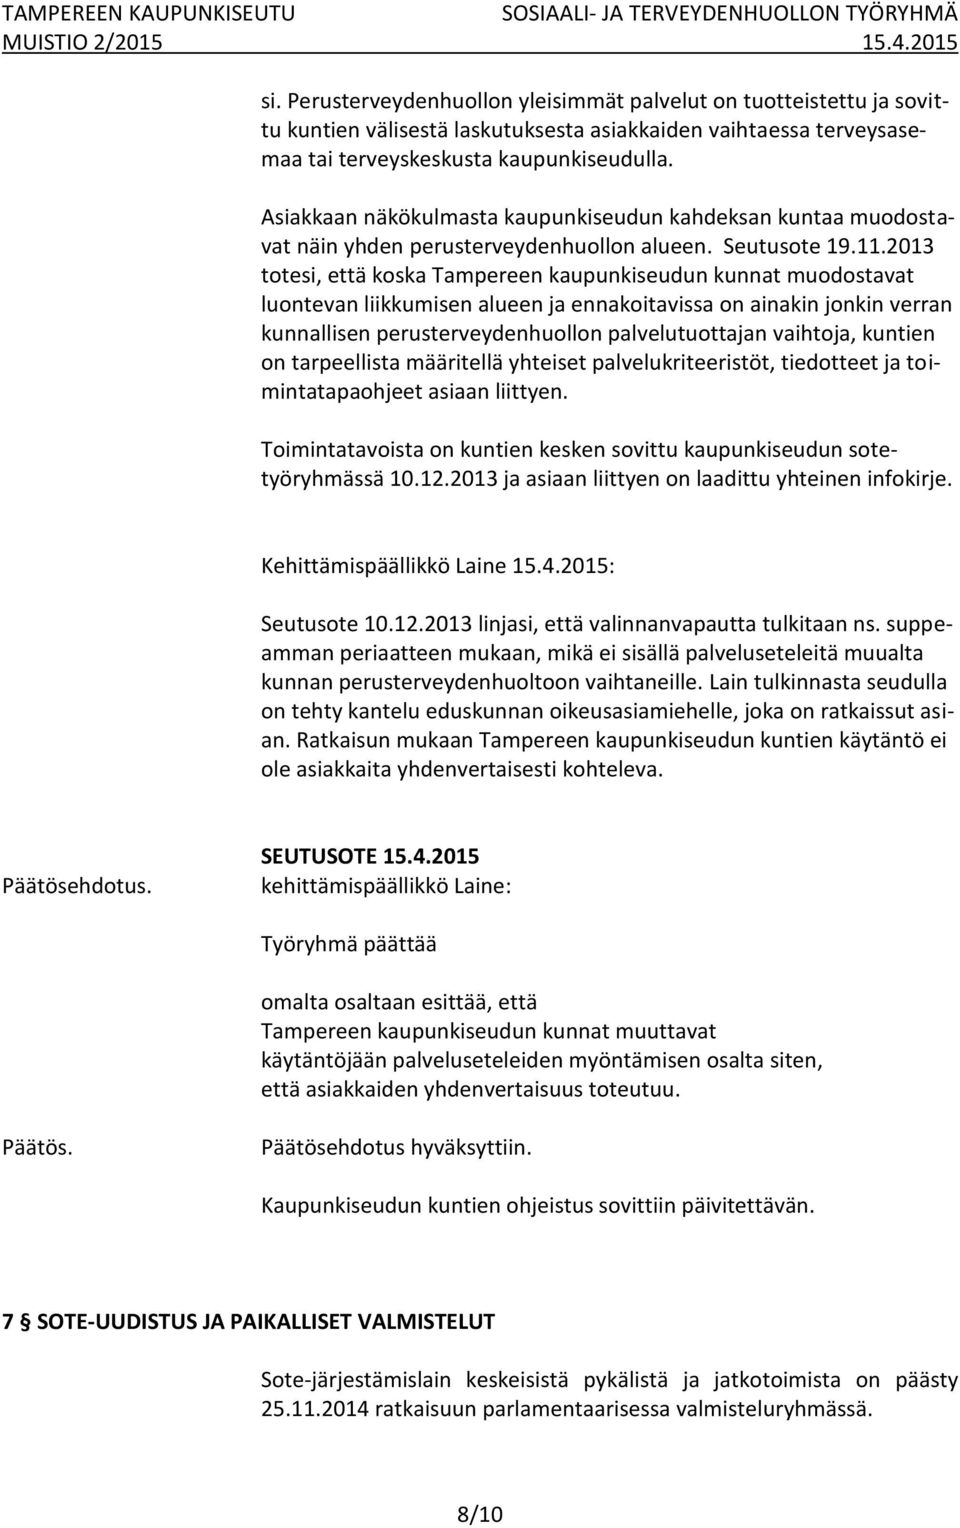 2013 totesi, että koska Tampereen kaupunkiseudun kunnat muodostavat luontevan liikkumisen alueen ja ennakoitavissa on ainakin jonkin verran kunnallisen perusterveydenhuollon palvelutuottajan